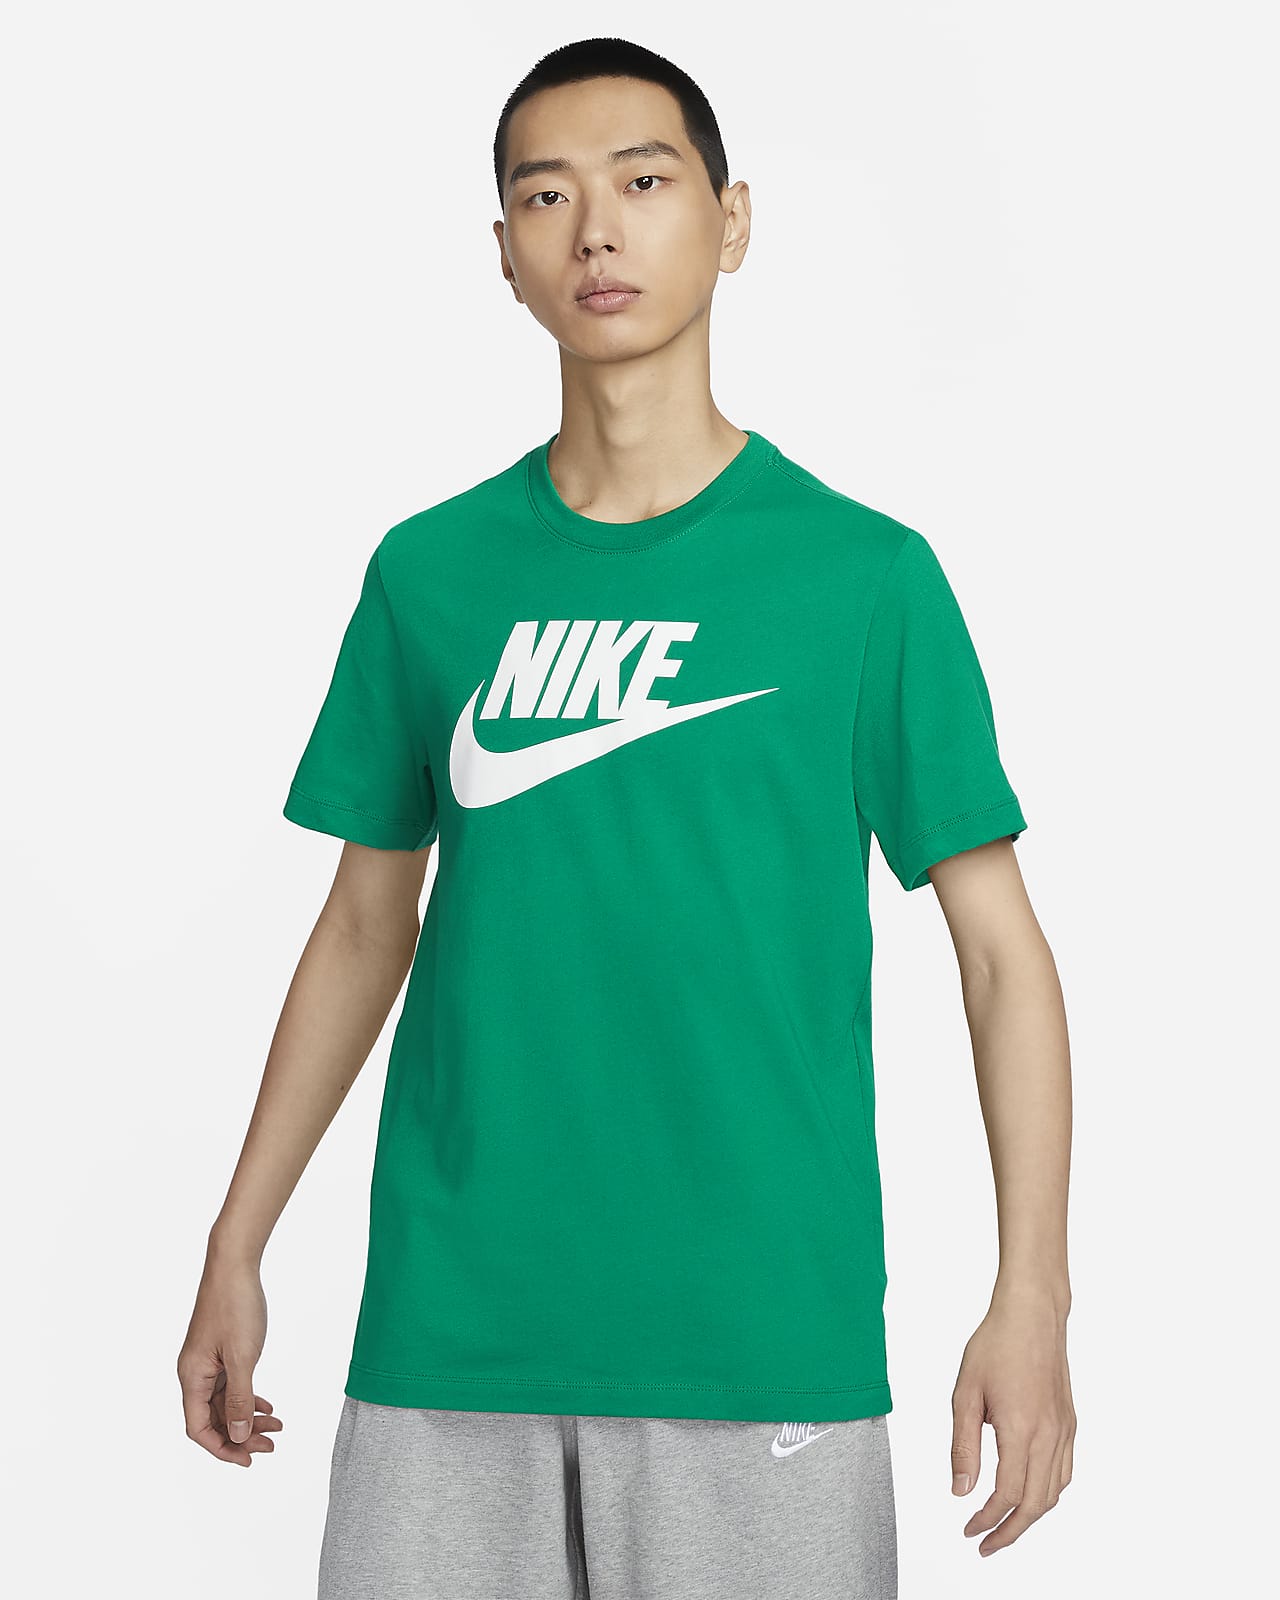 Nike Sportswear 男子T恤-NIKE 中文官方网站